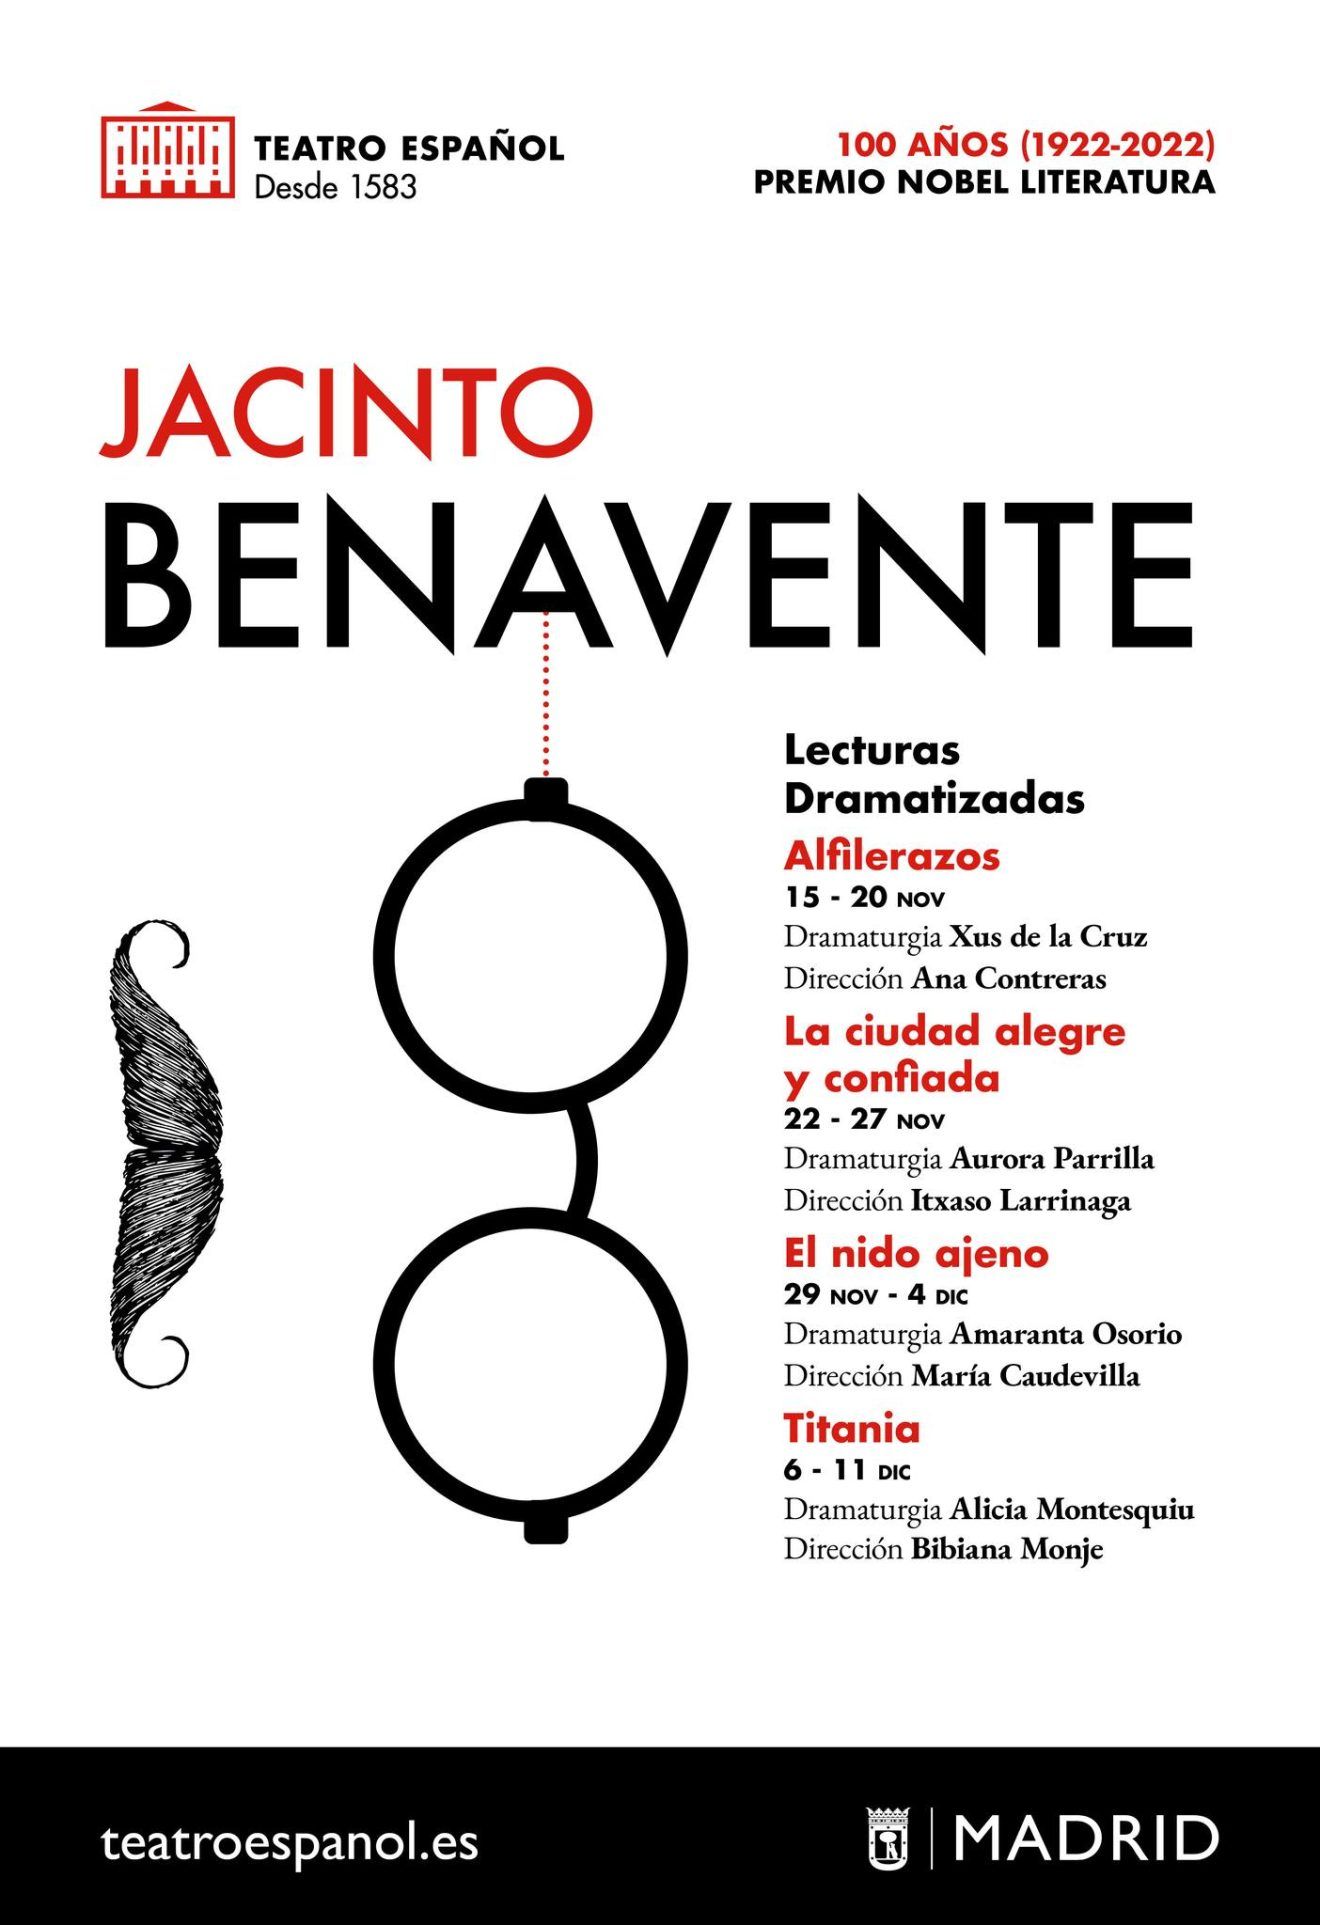 LECTURAS JACINTO BENAVENTE en las Naves y el Teatro Español - Madrid Es Teatro